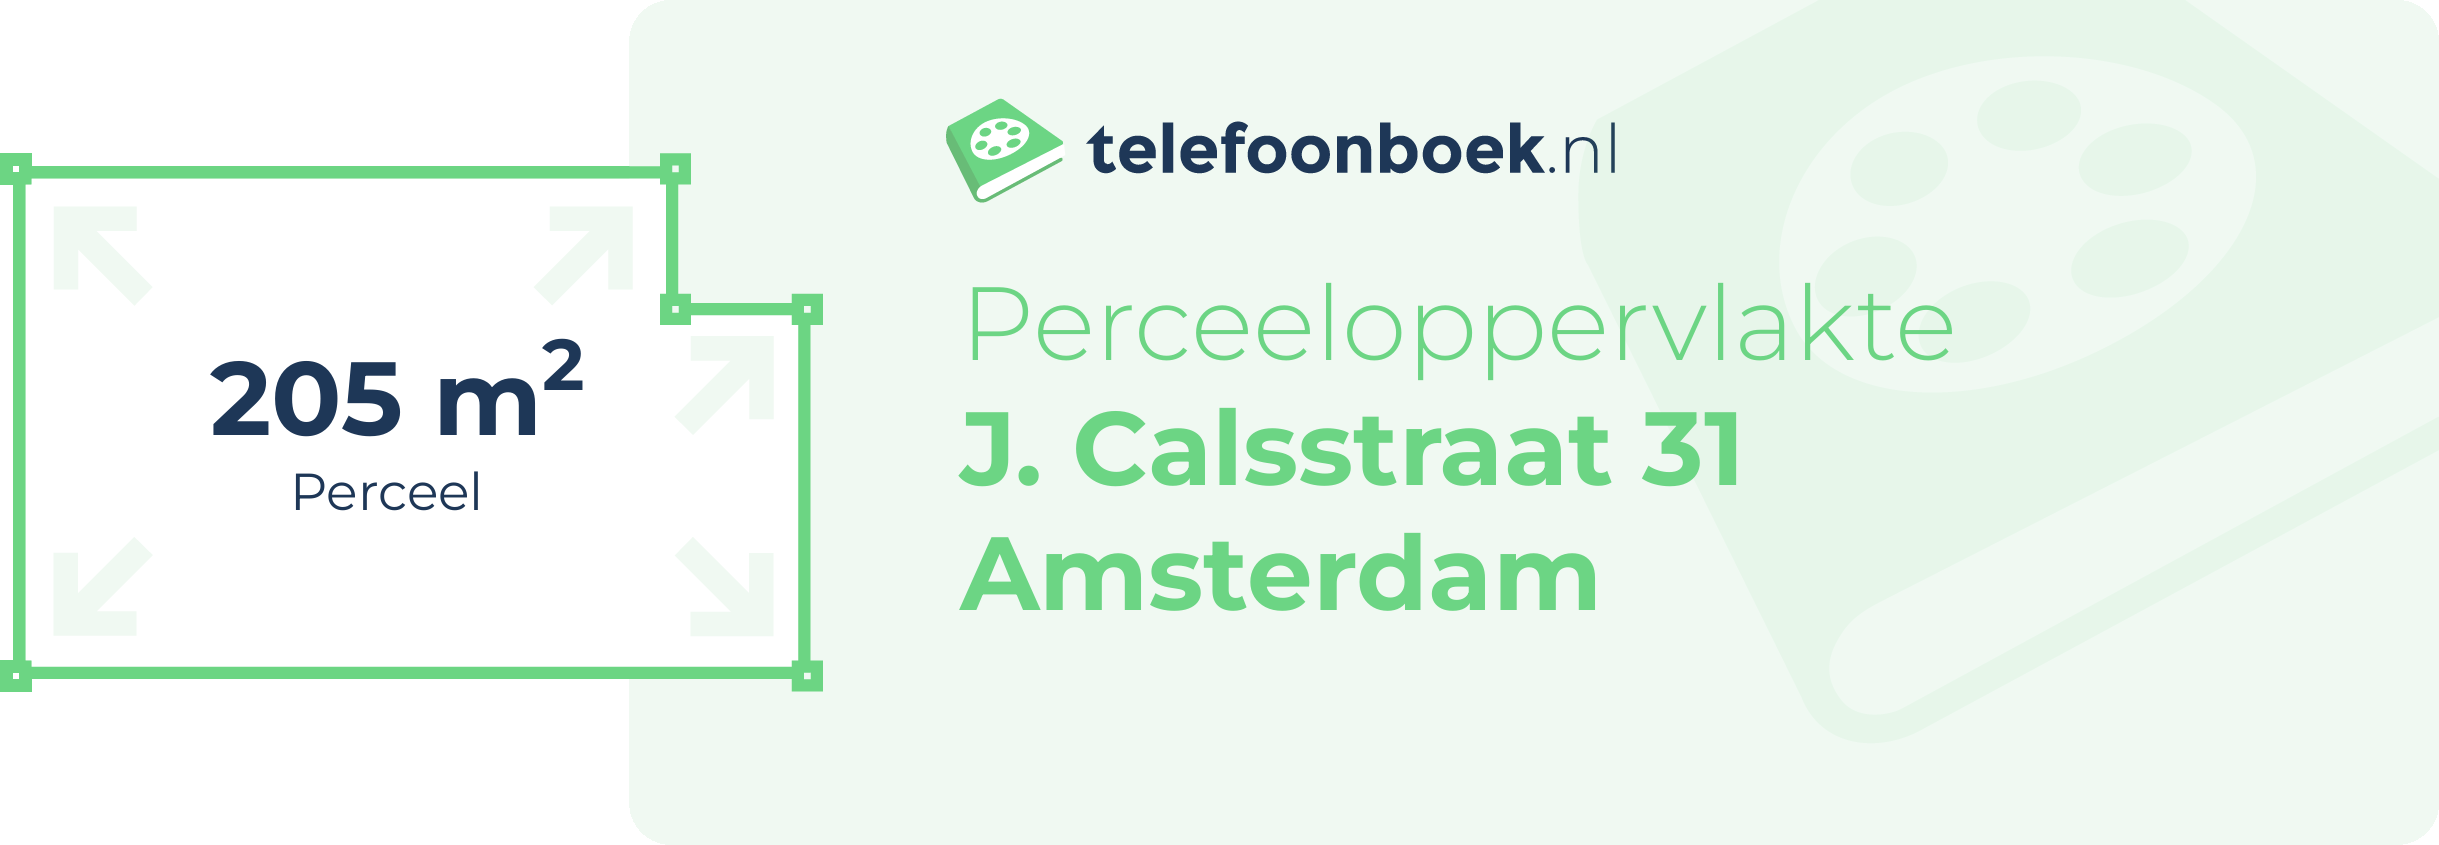 Perceeloppervlakte J. Calsstraat 31 Amsterdam